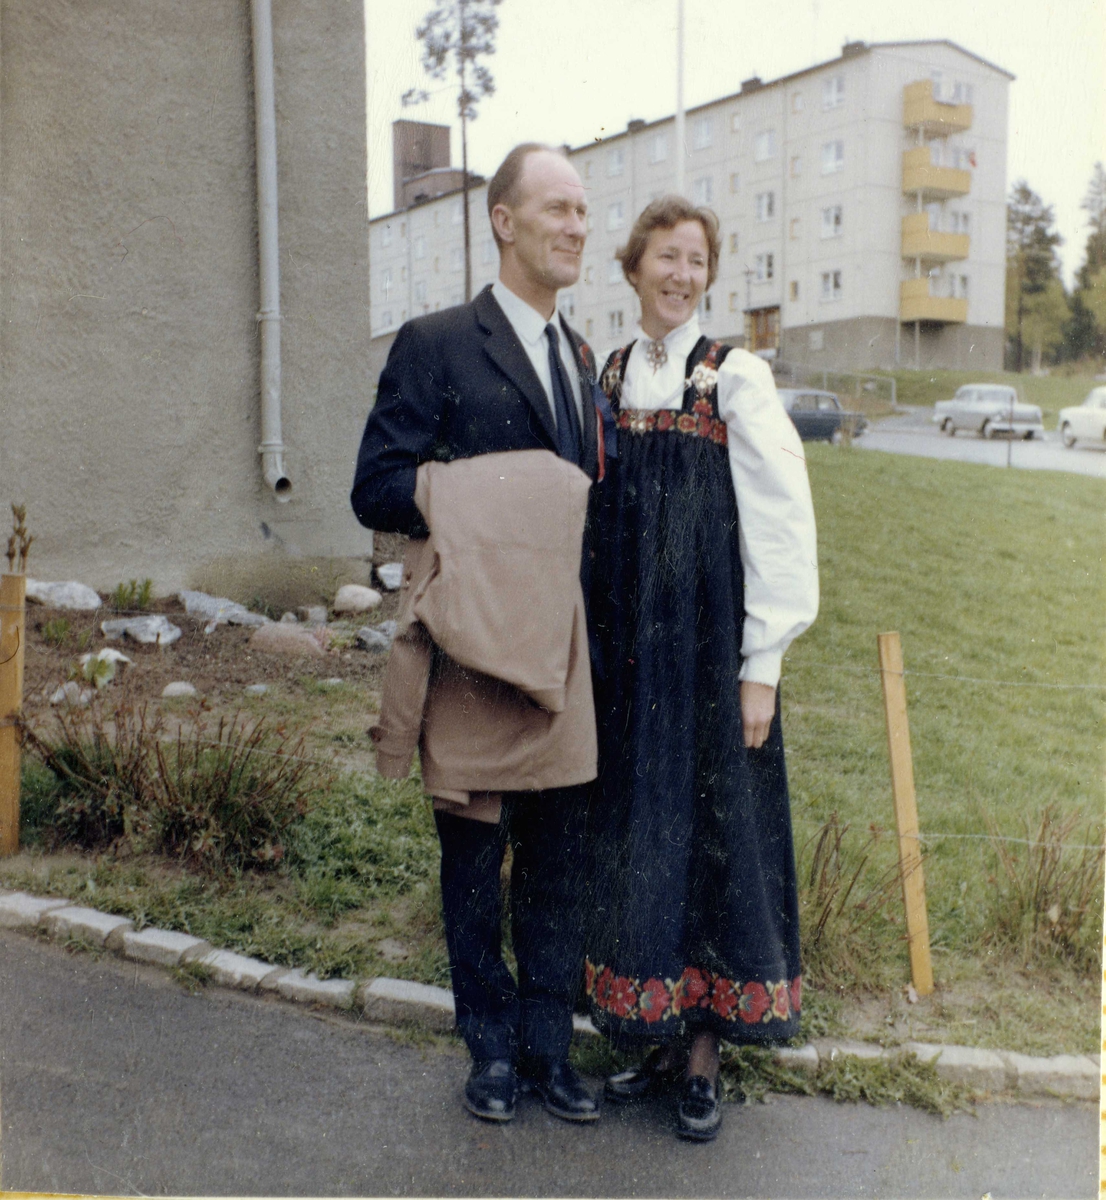 Portrett,kjole jakke og bukse.
Evy Gerd Johansen og Svein Strand Perigarden.